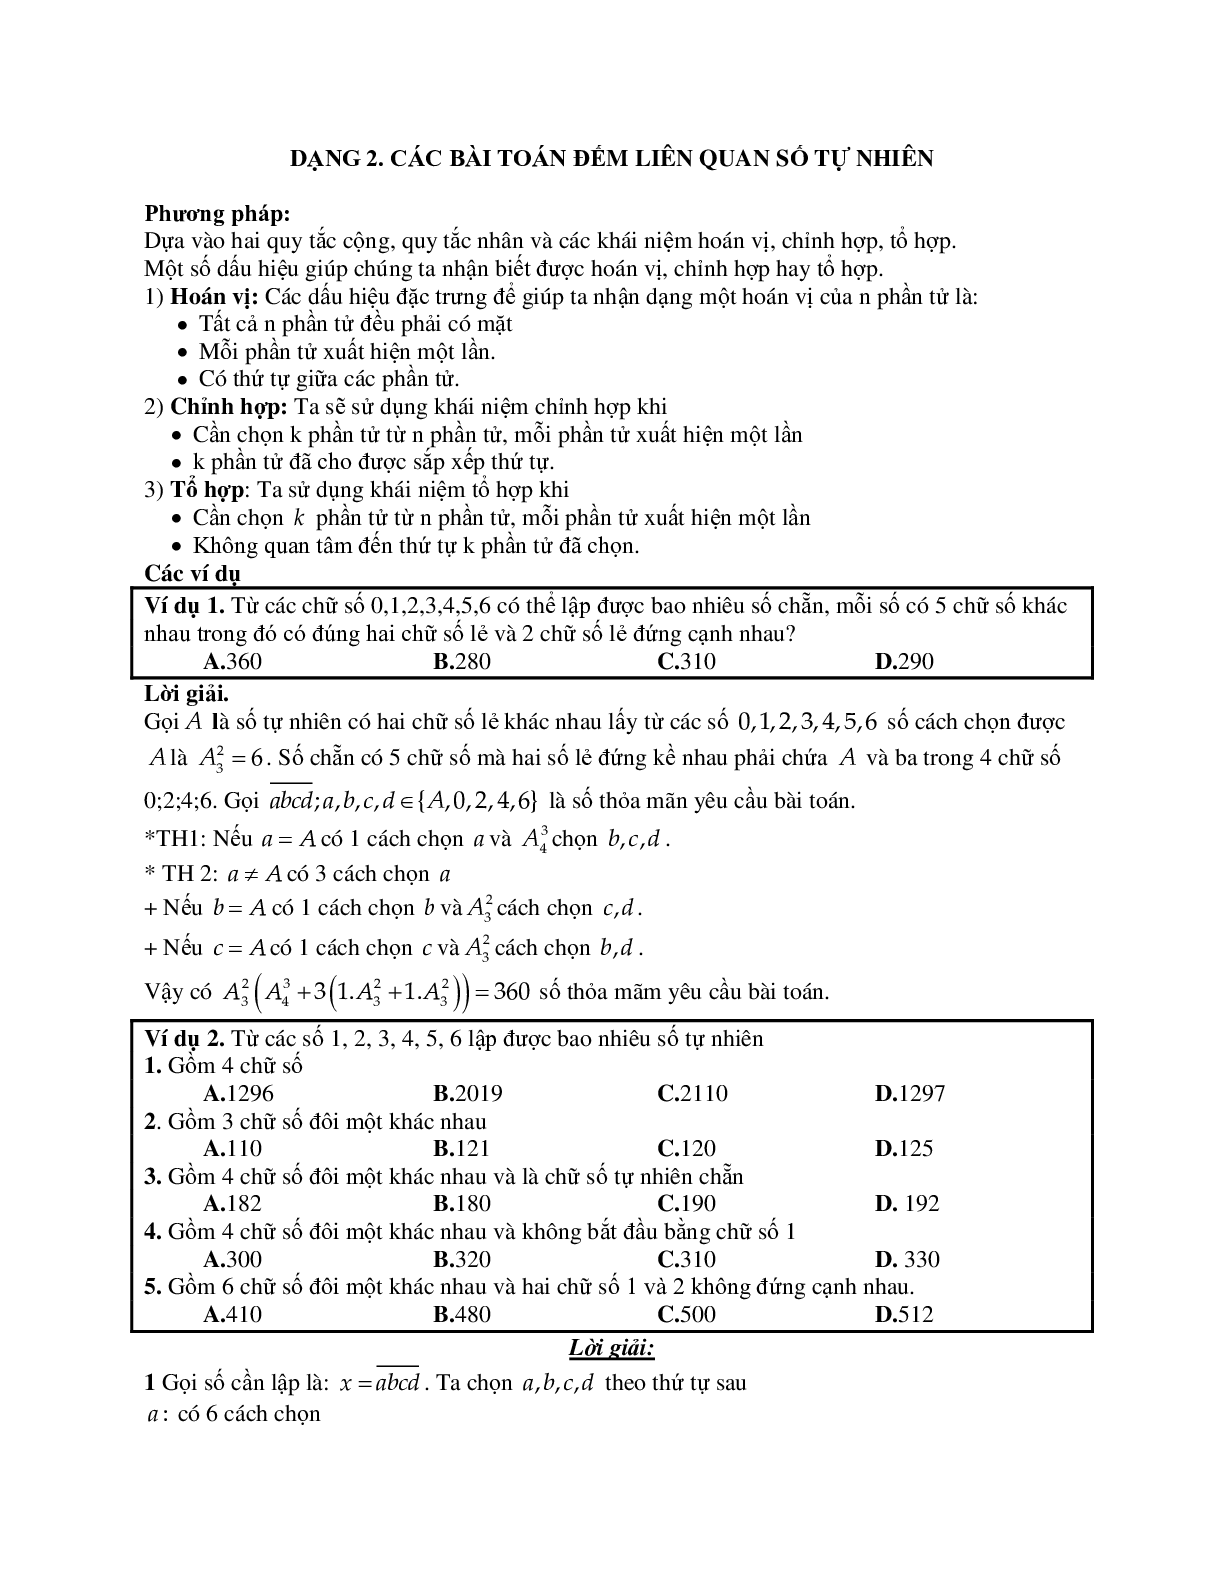 Phương pháp giải và bài tập về Các bài toán đếm liên quan số tự nhiên (trang 1)